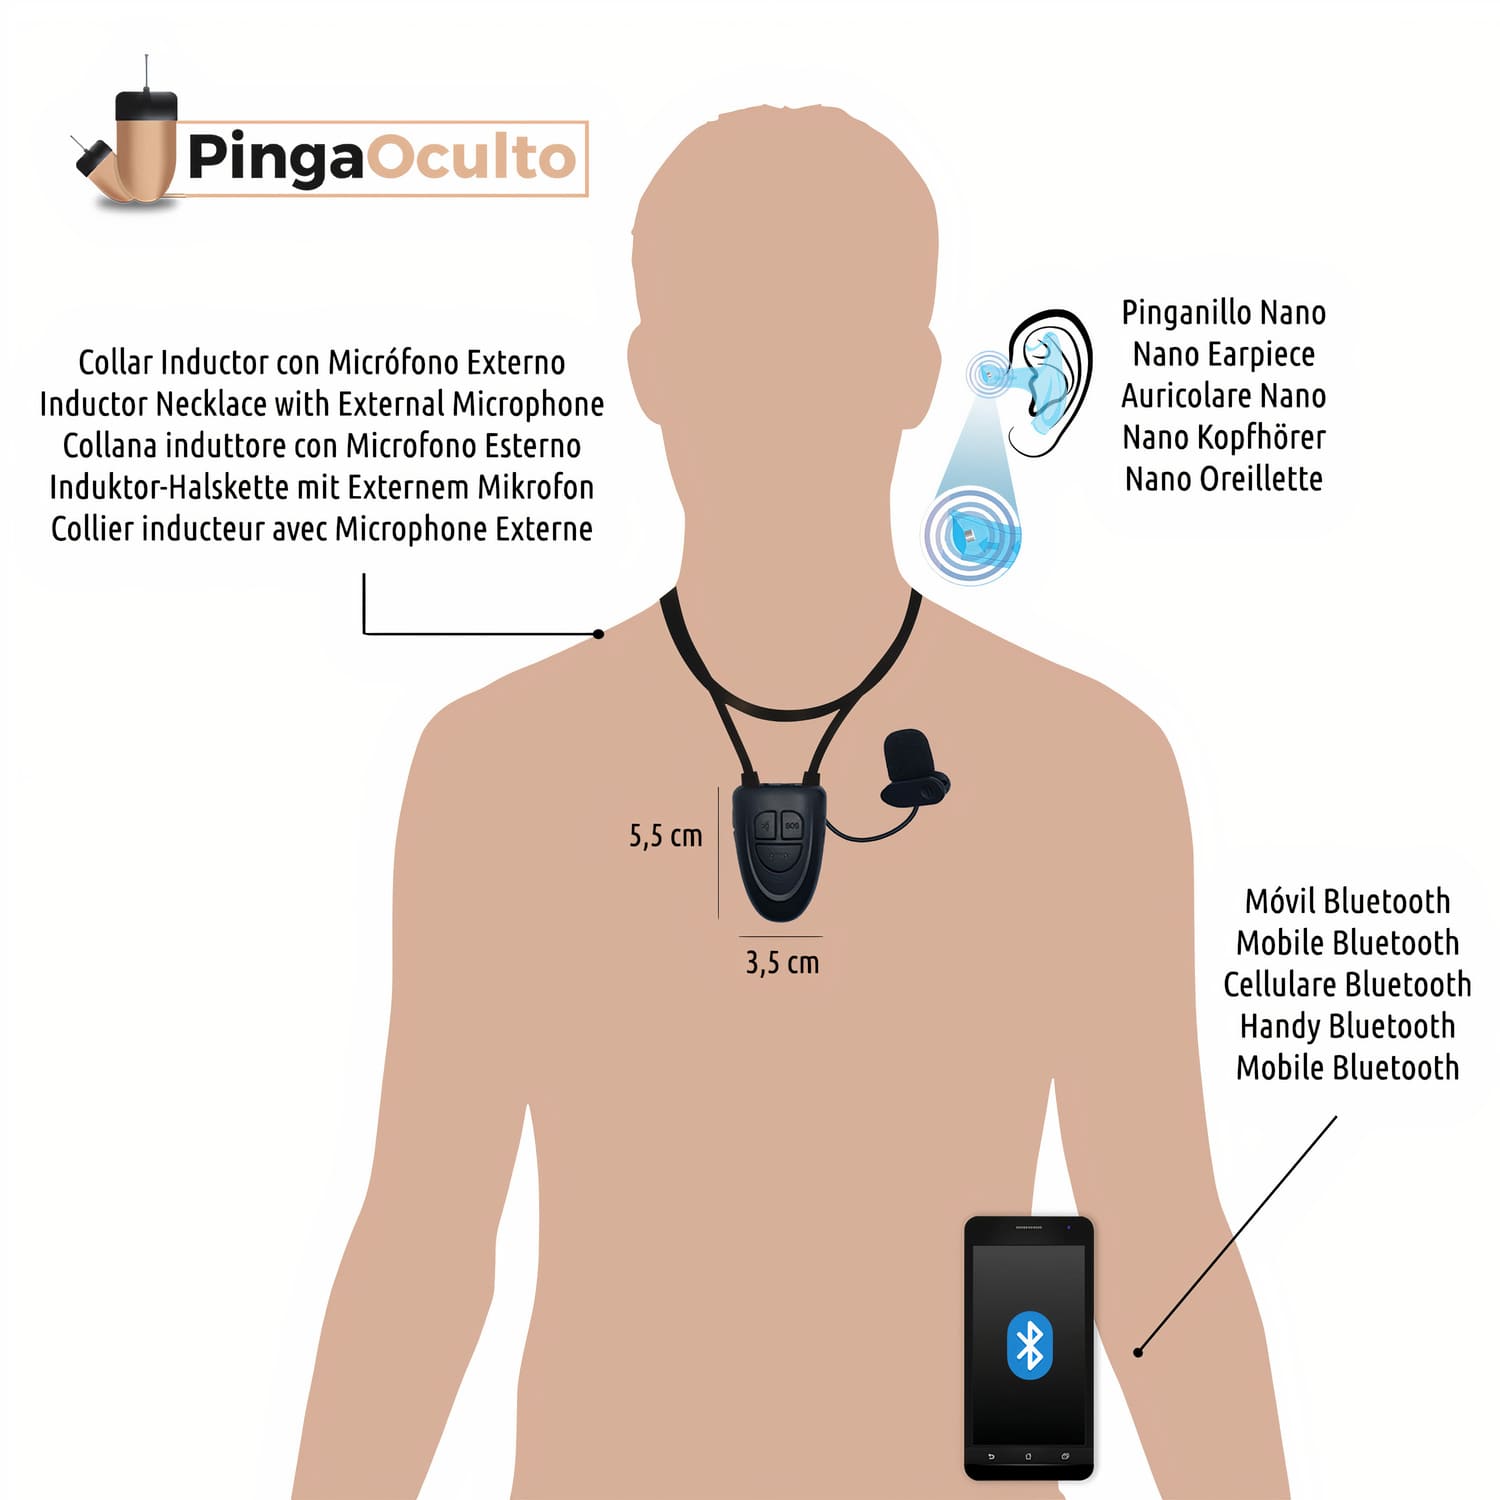 Pinganillo Nano V5 - PingaOculto ®